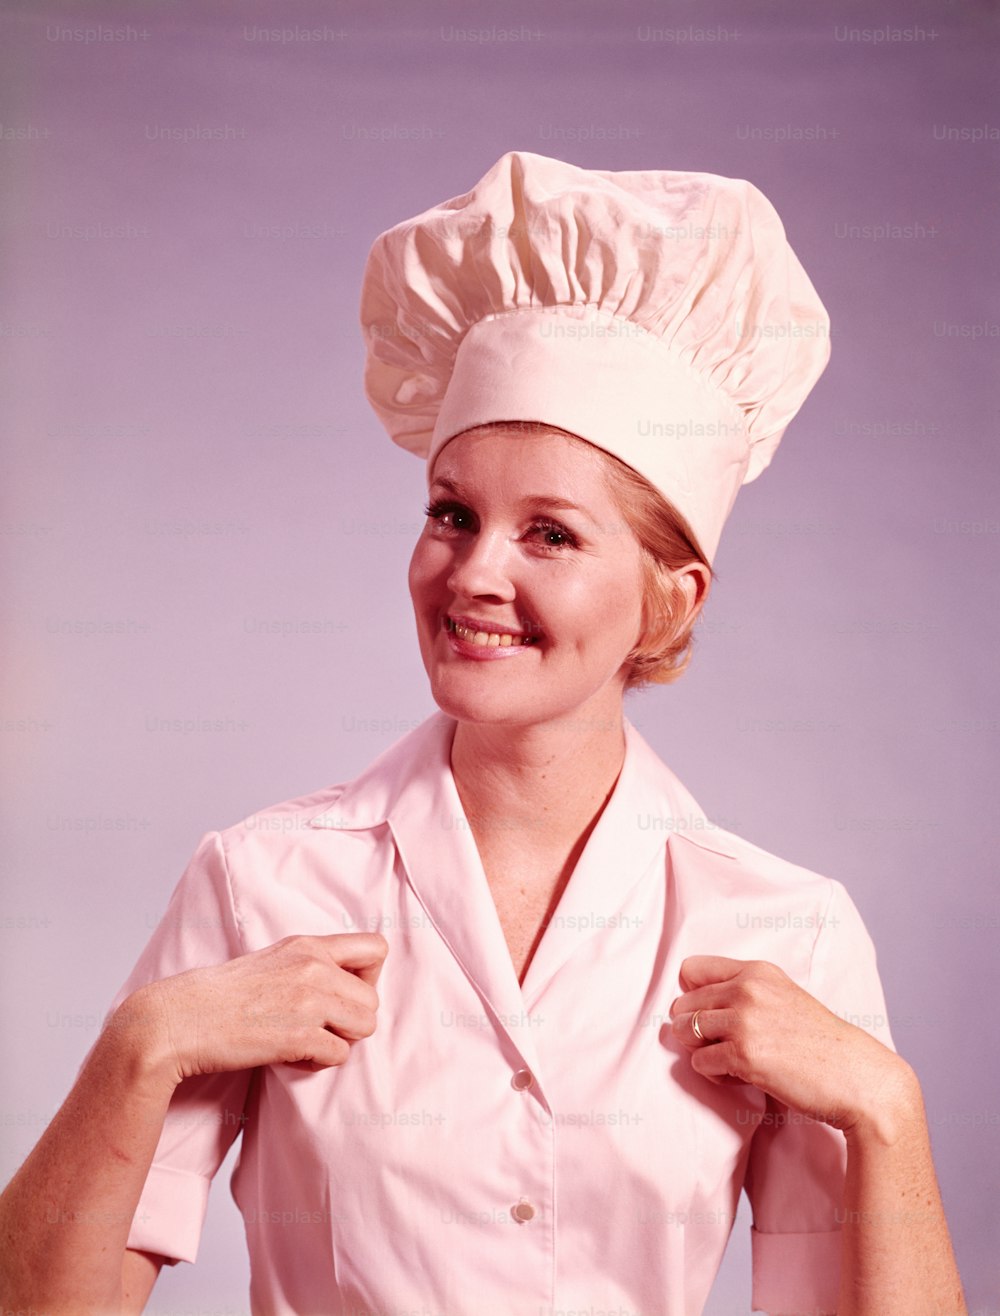 ESTADOS UNIDOS - CIRCA 1960s: Chef sonriendo y gesticulando con el pulgar hacia arriba.